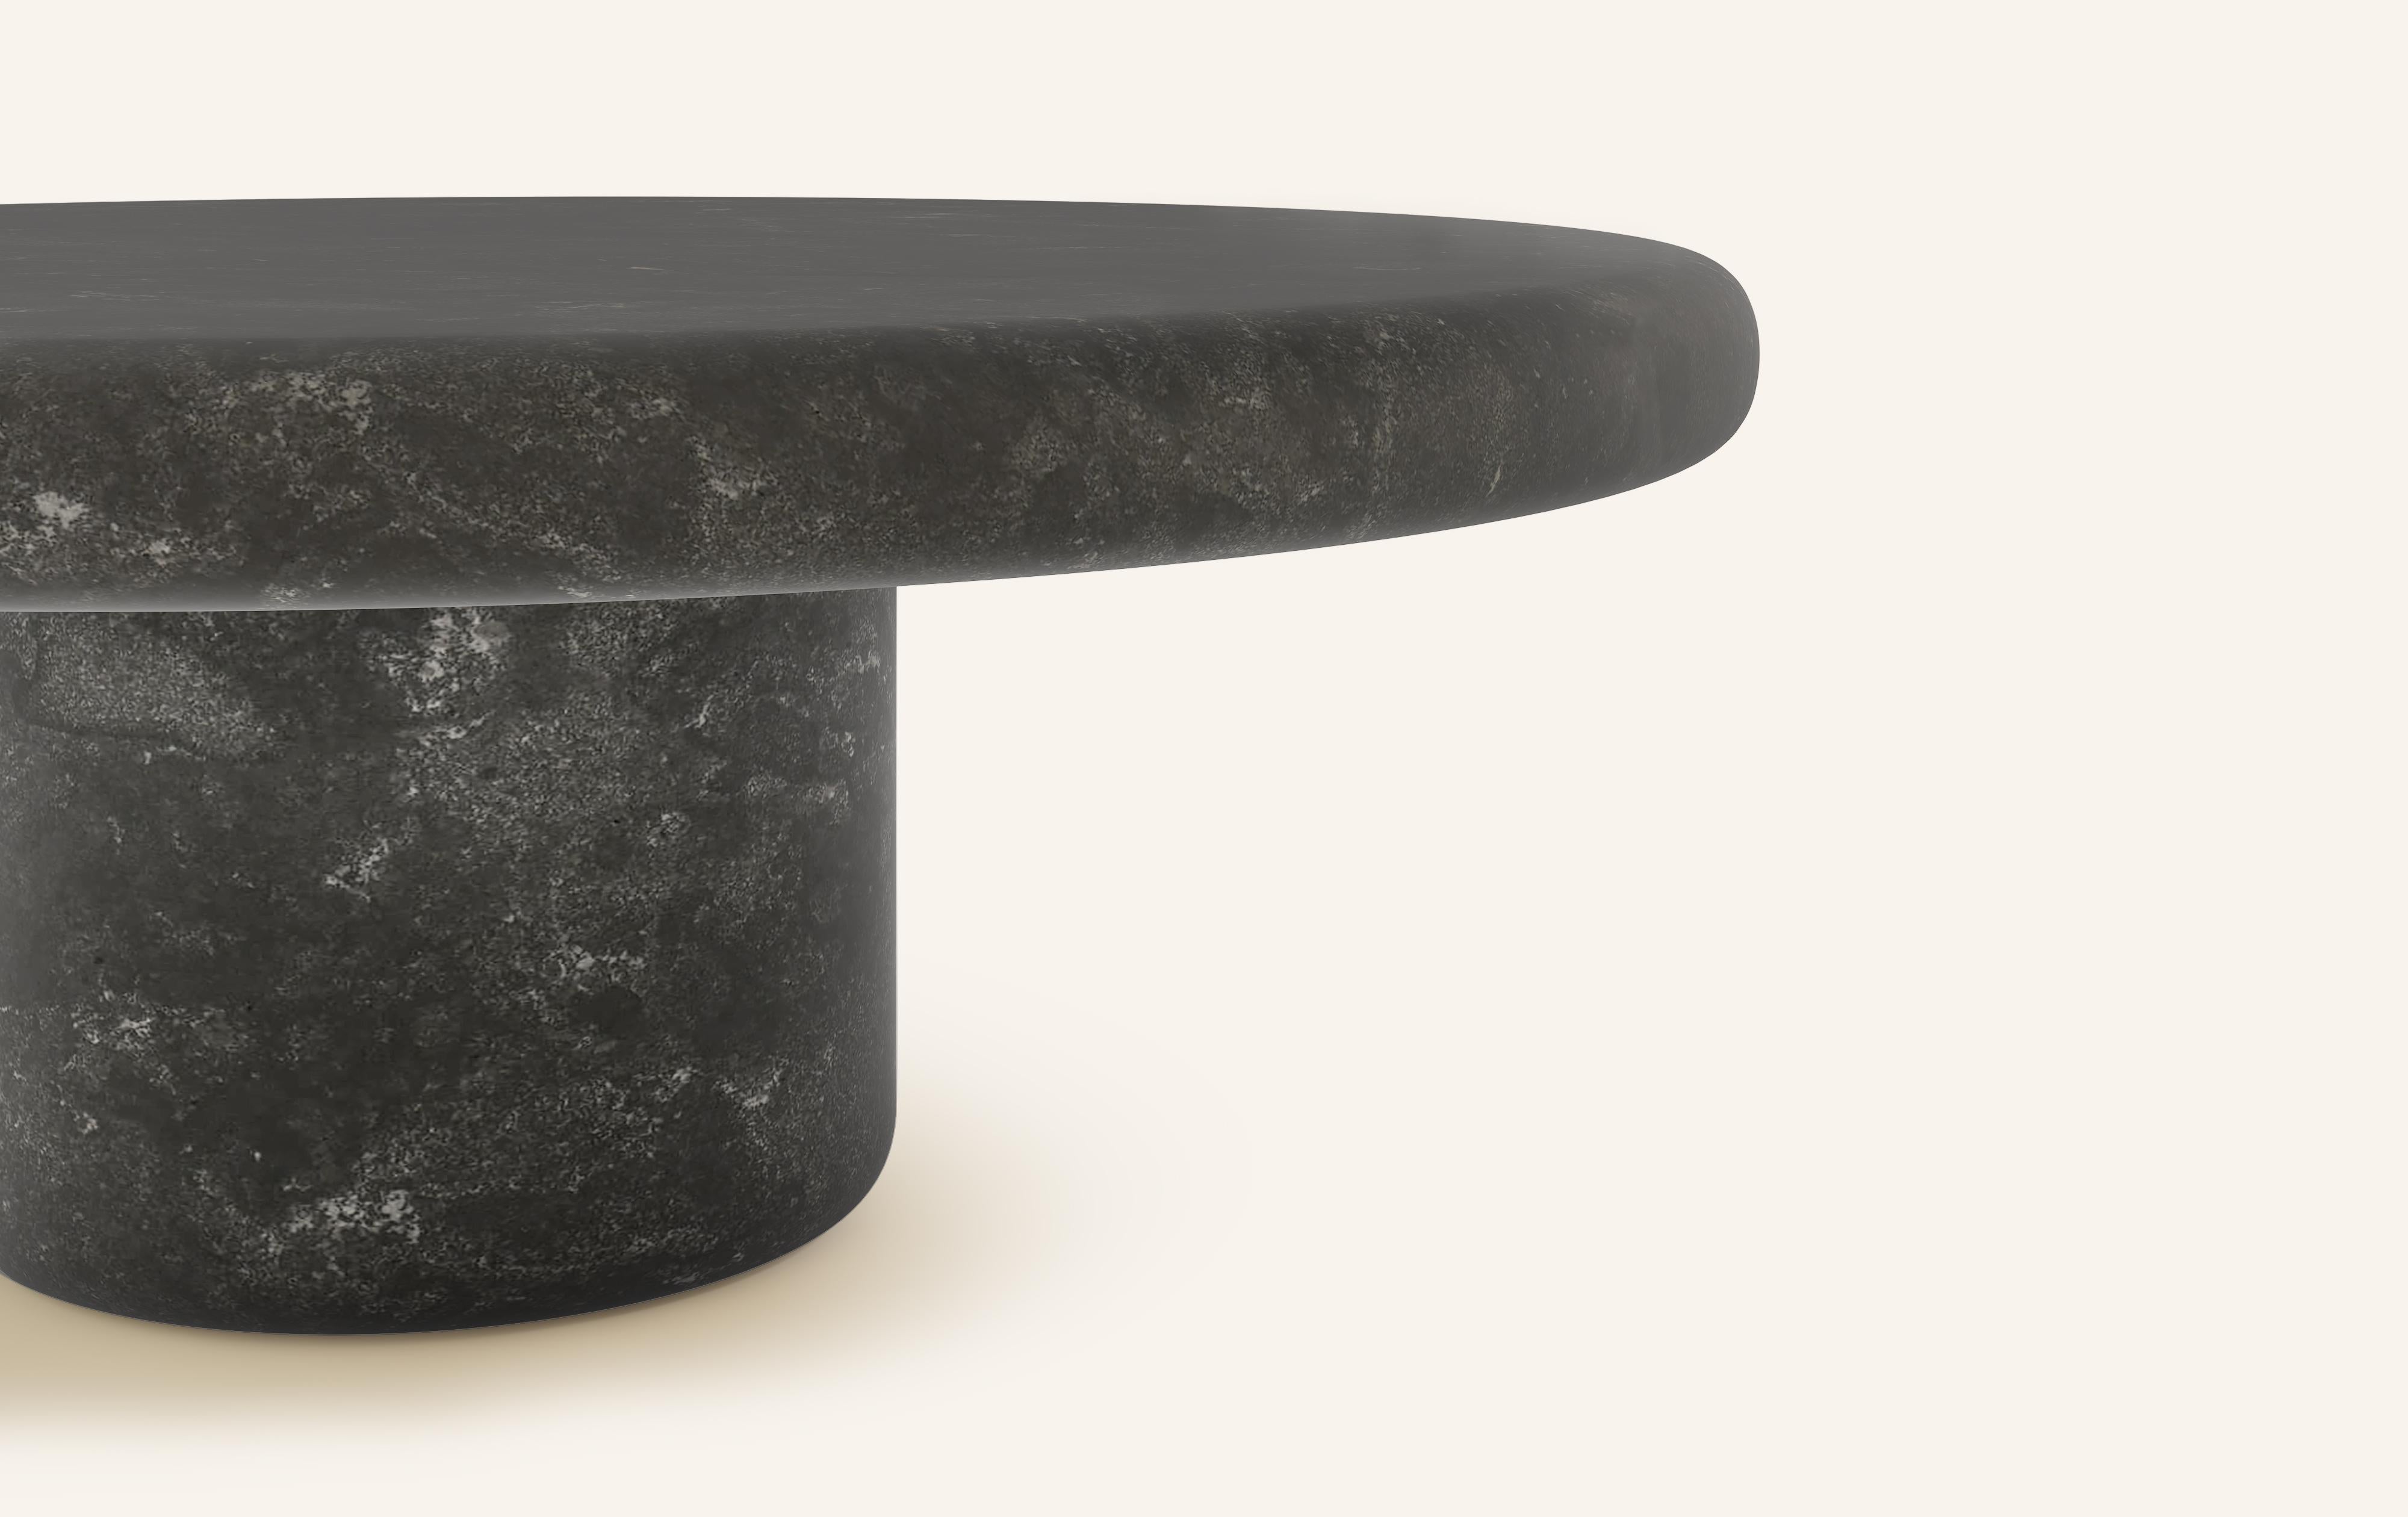 Organic Modern FORM(LA) Luna Round Coffee Table 48”L x 48”W x 15”H Nero Petite Granite For Sale